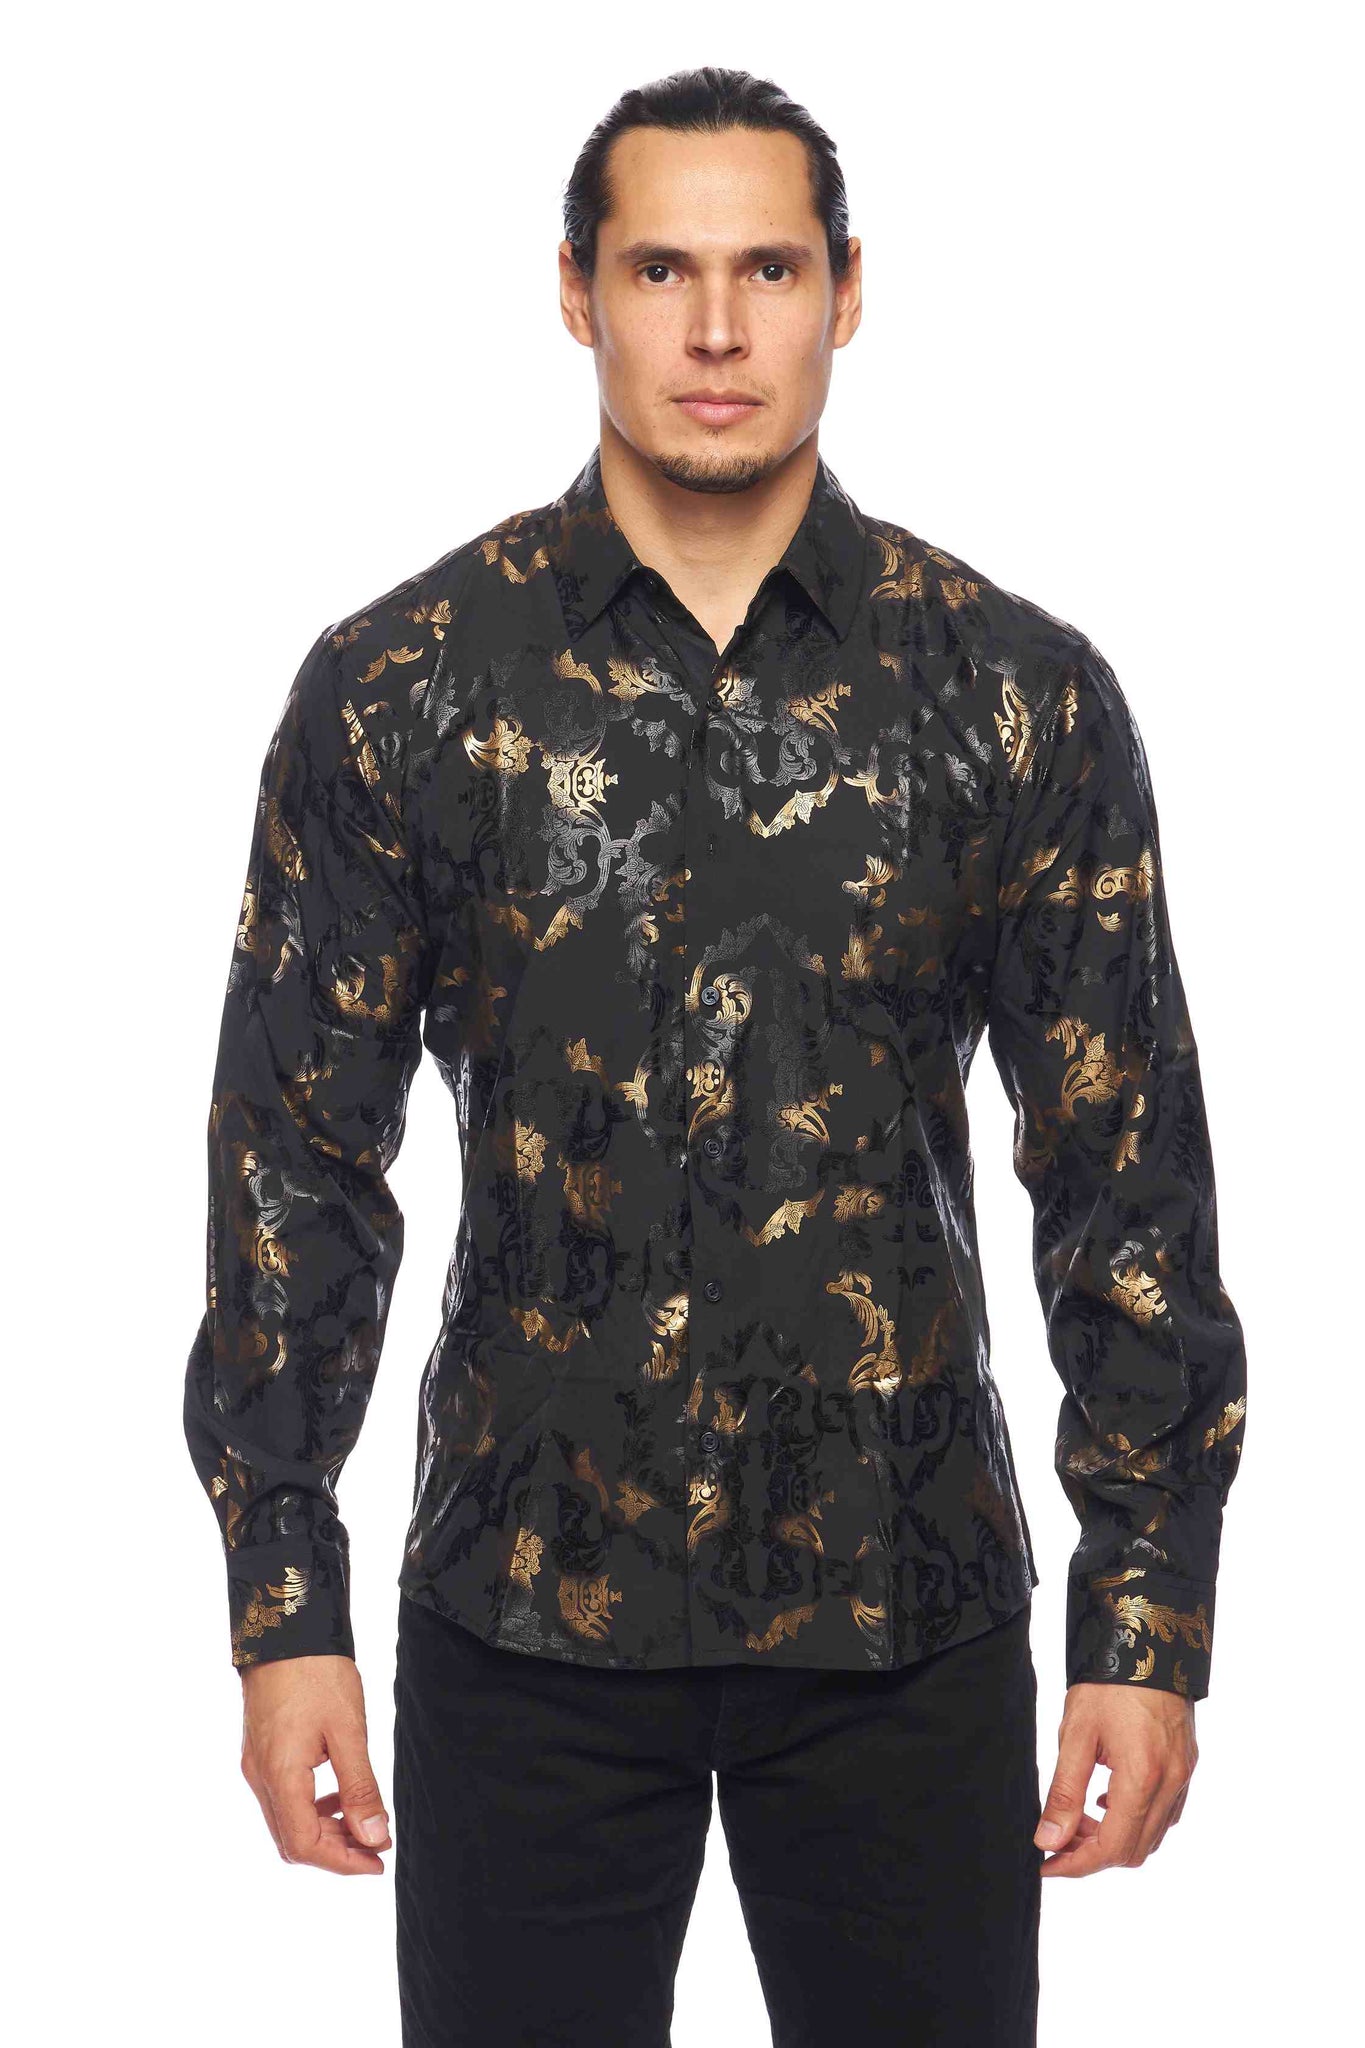 Mens Luxury Brand Printed Silk Like Shirts-HLS2002L-518